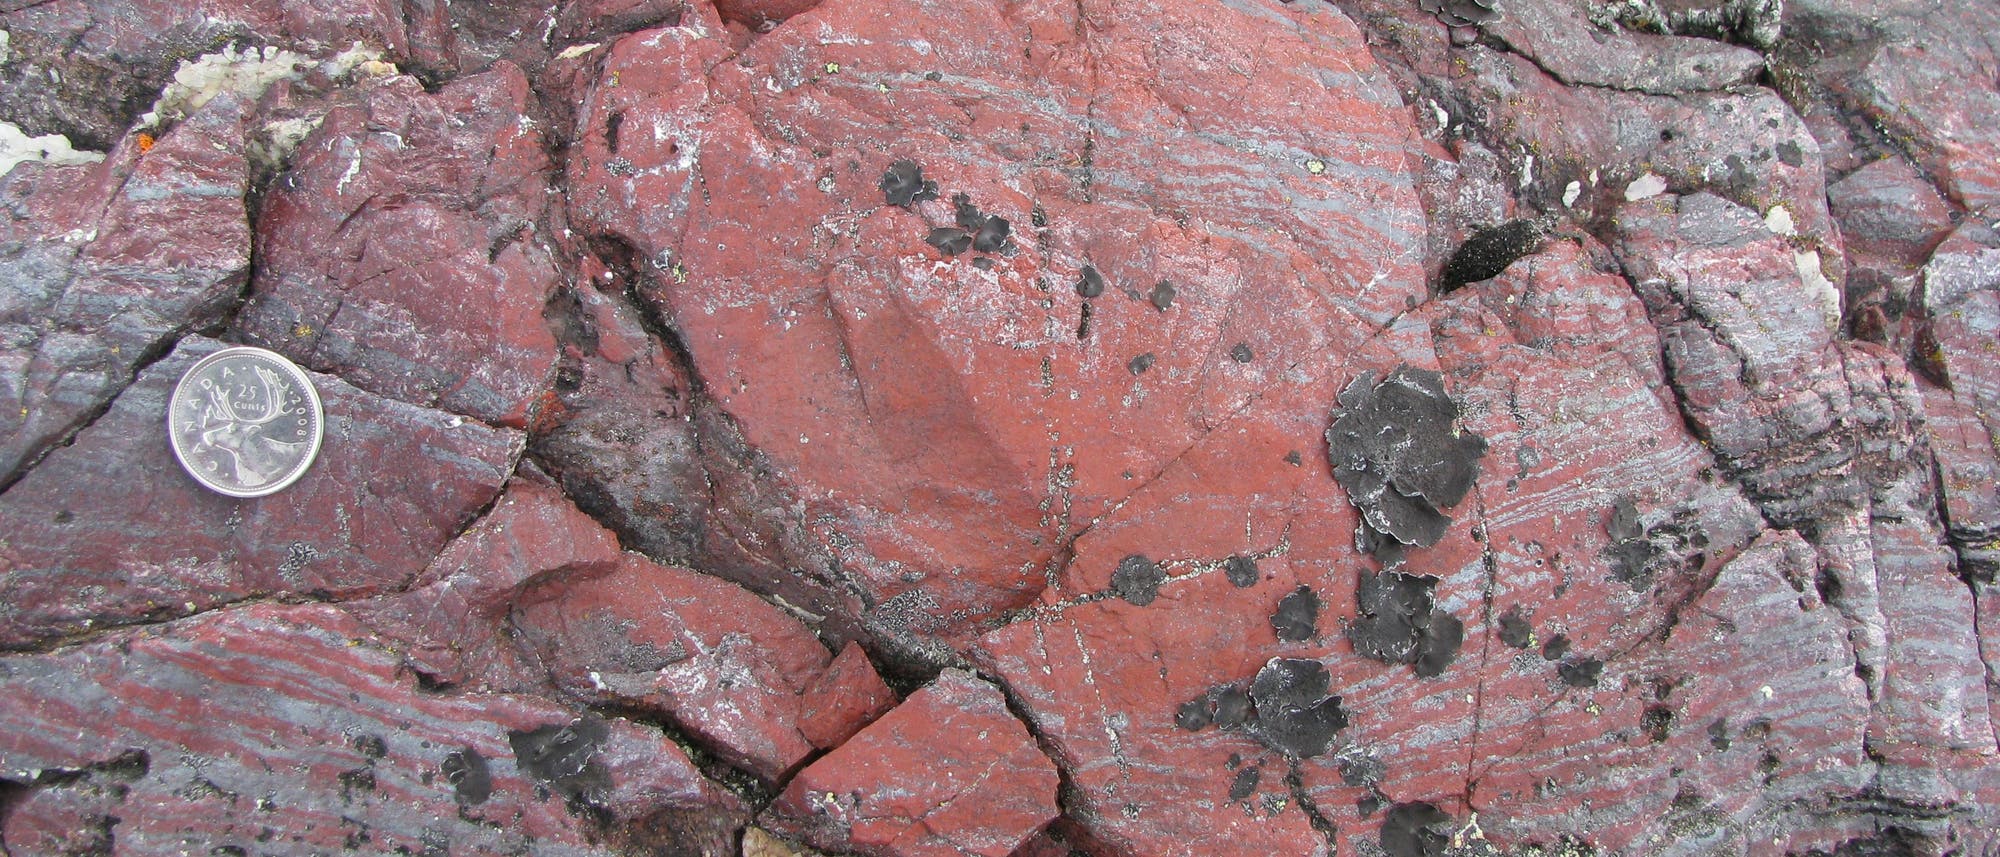 Die eisenreichen Mineralien enthalten womöglich die ältesten Spuren des Lebens auf der Erde